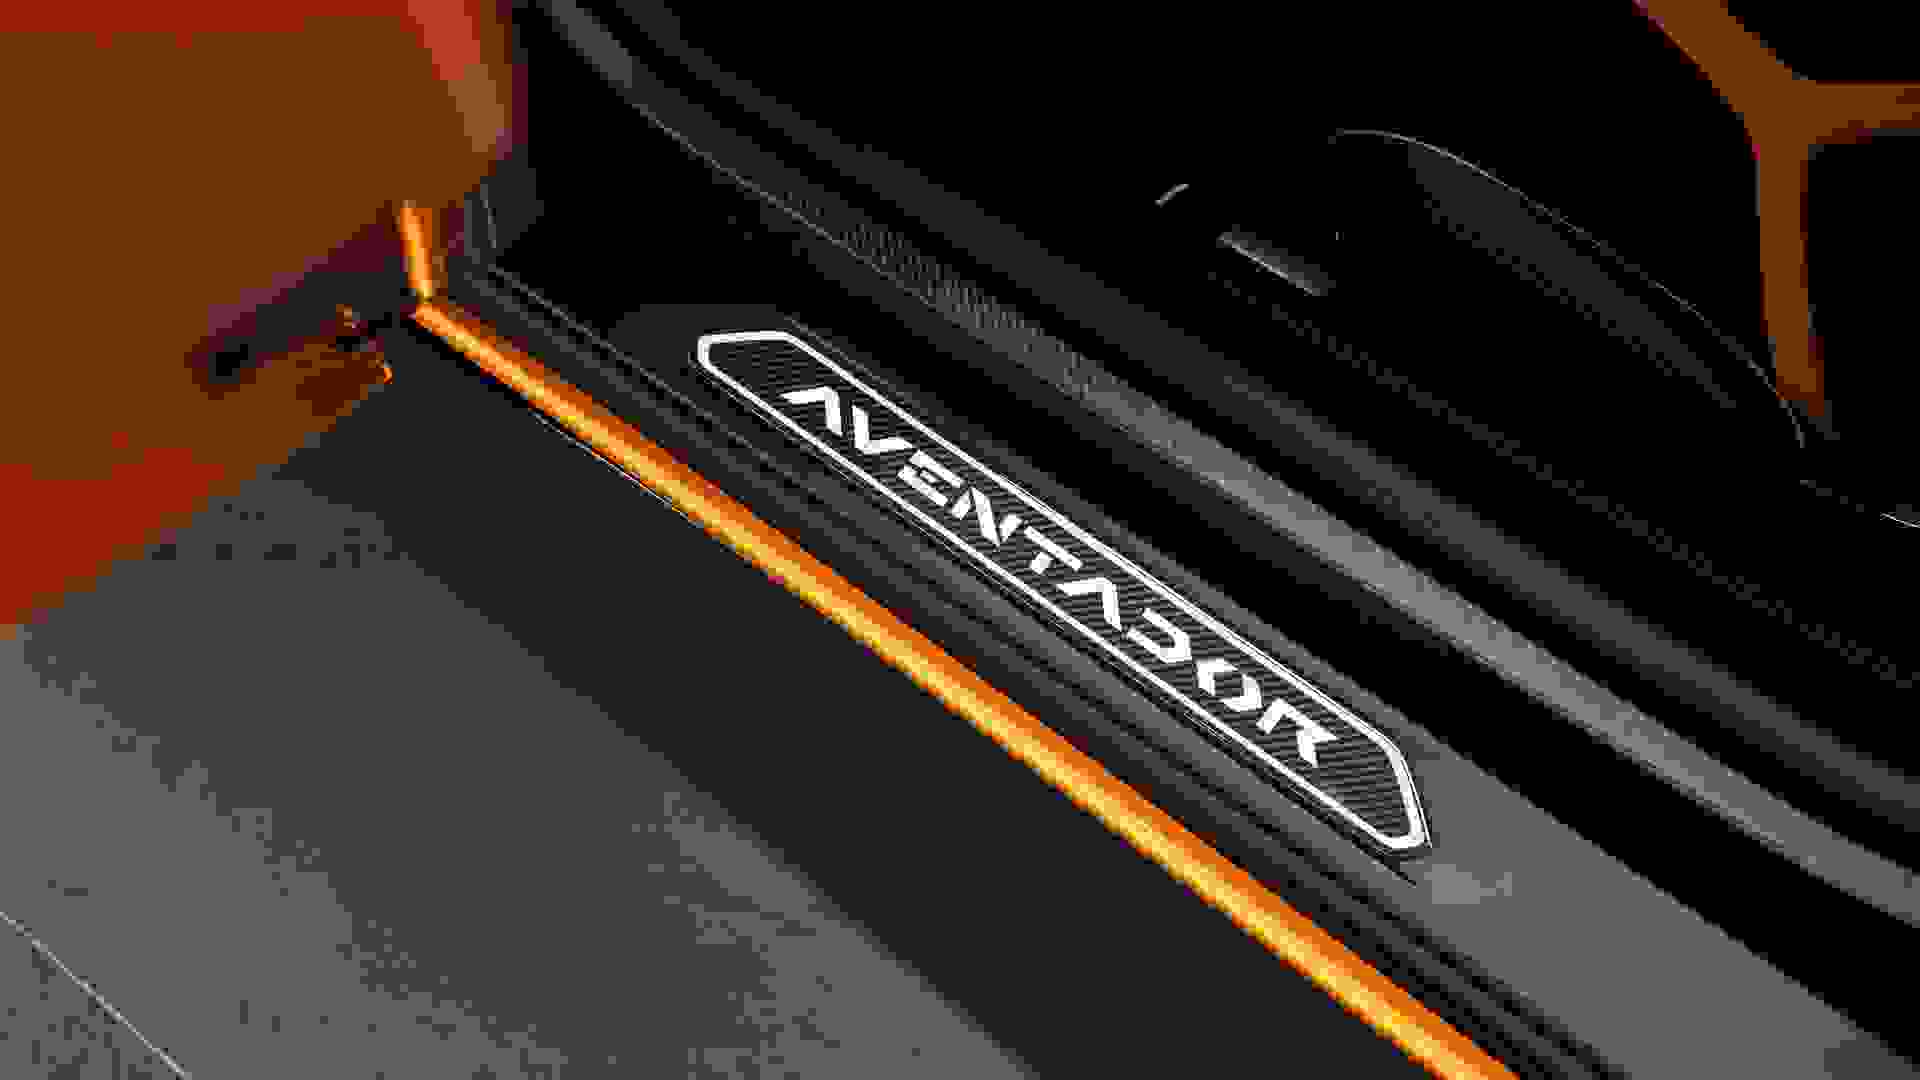 Lamborghini AVENTADOR SV Photo b833e4f5-69f4-4006-9a67-292293f8de97.jpg